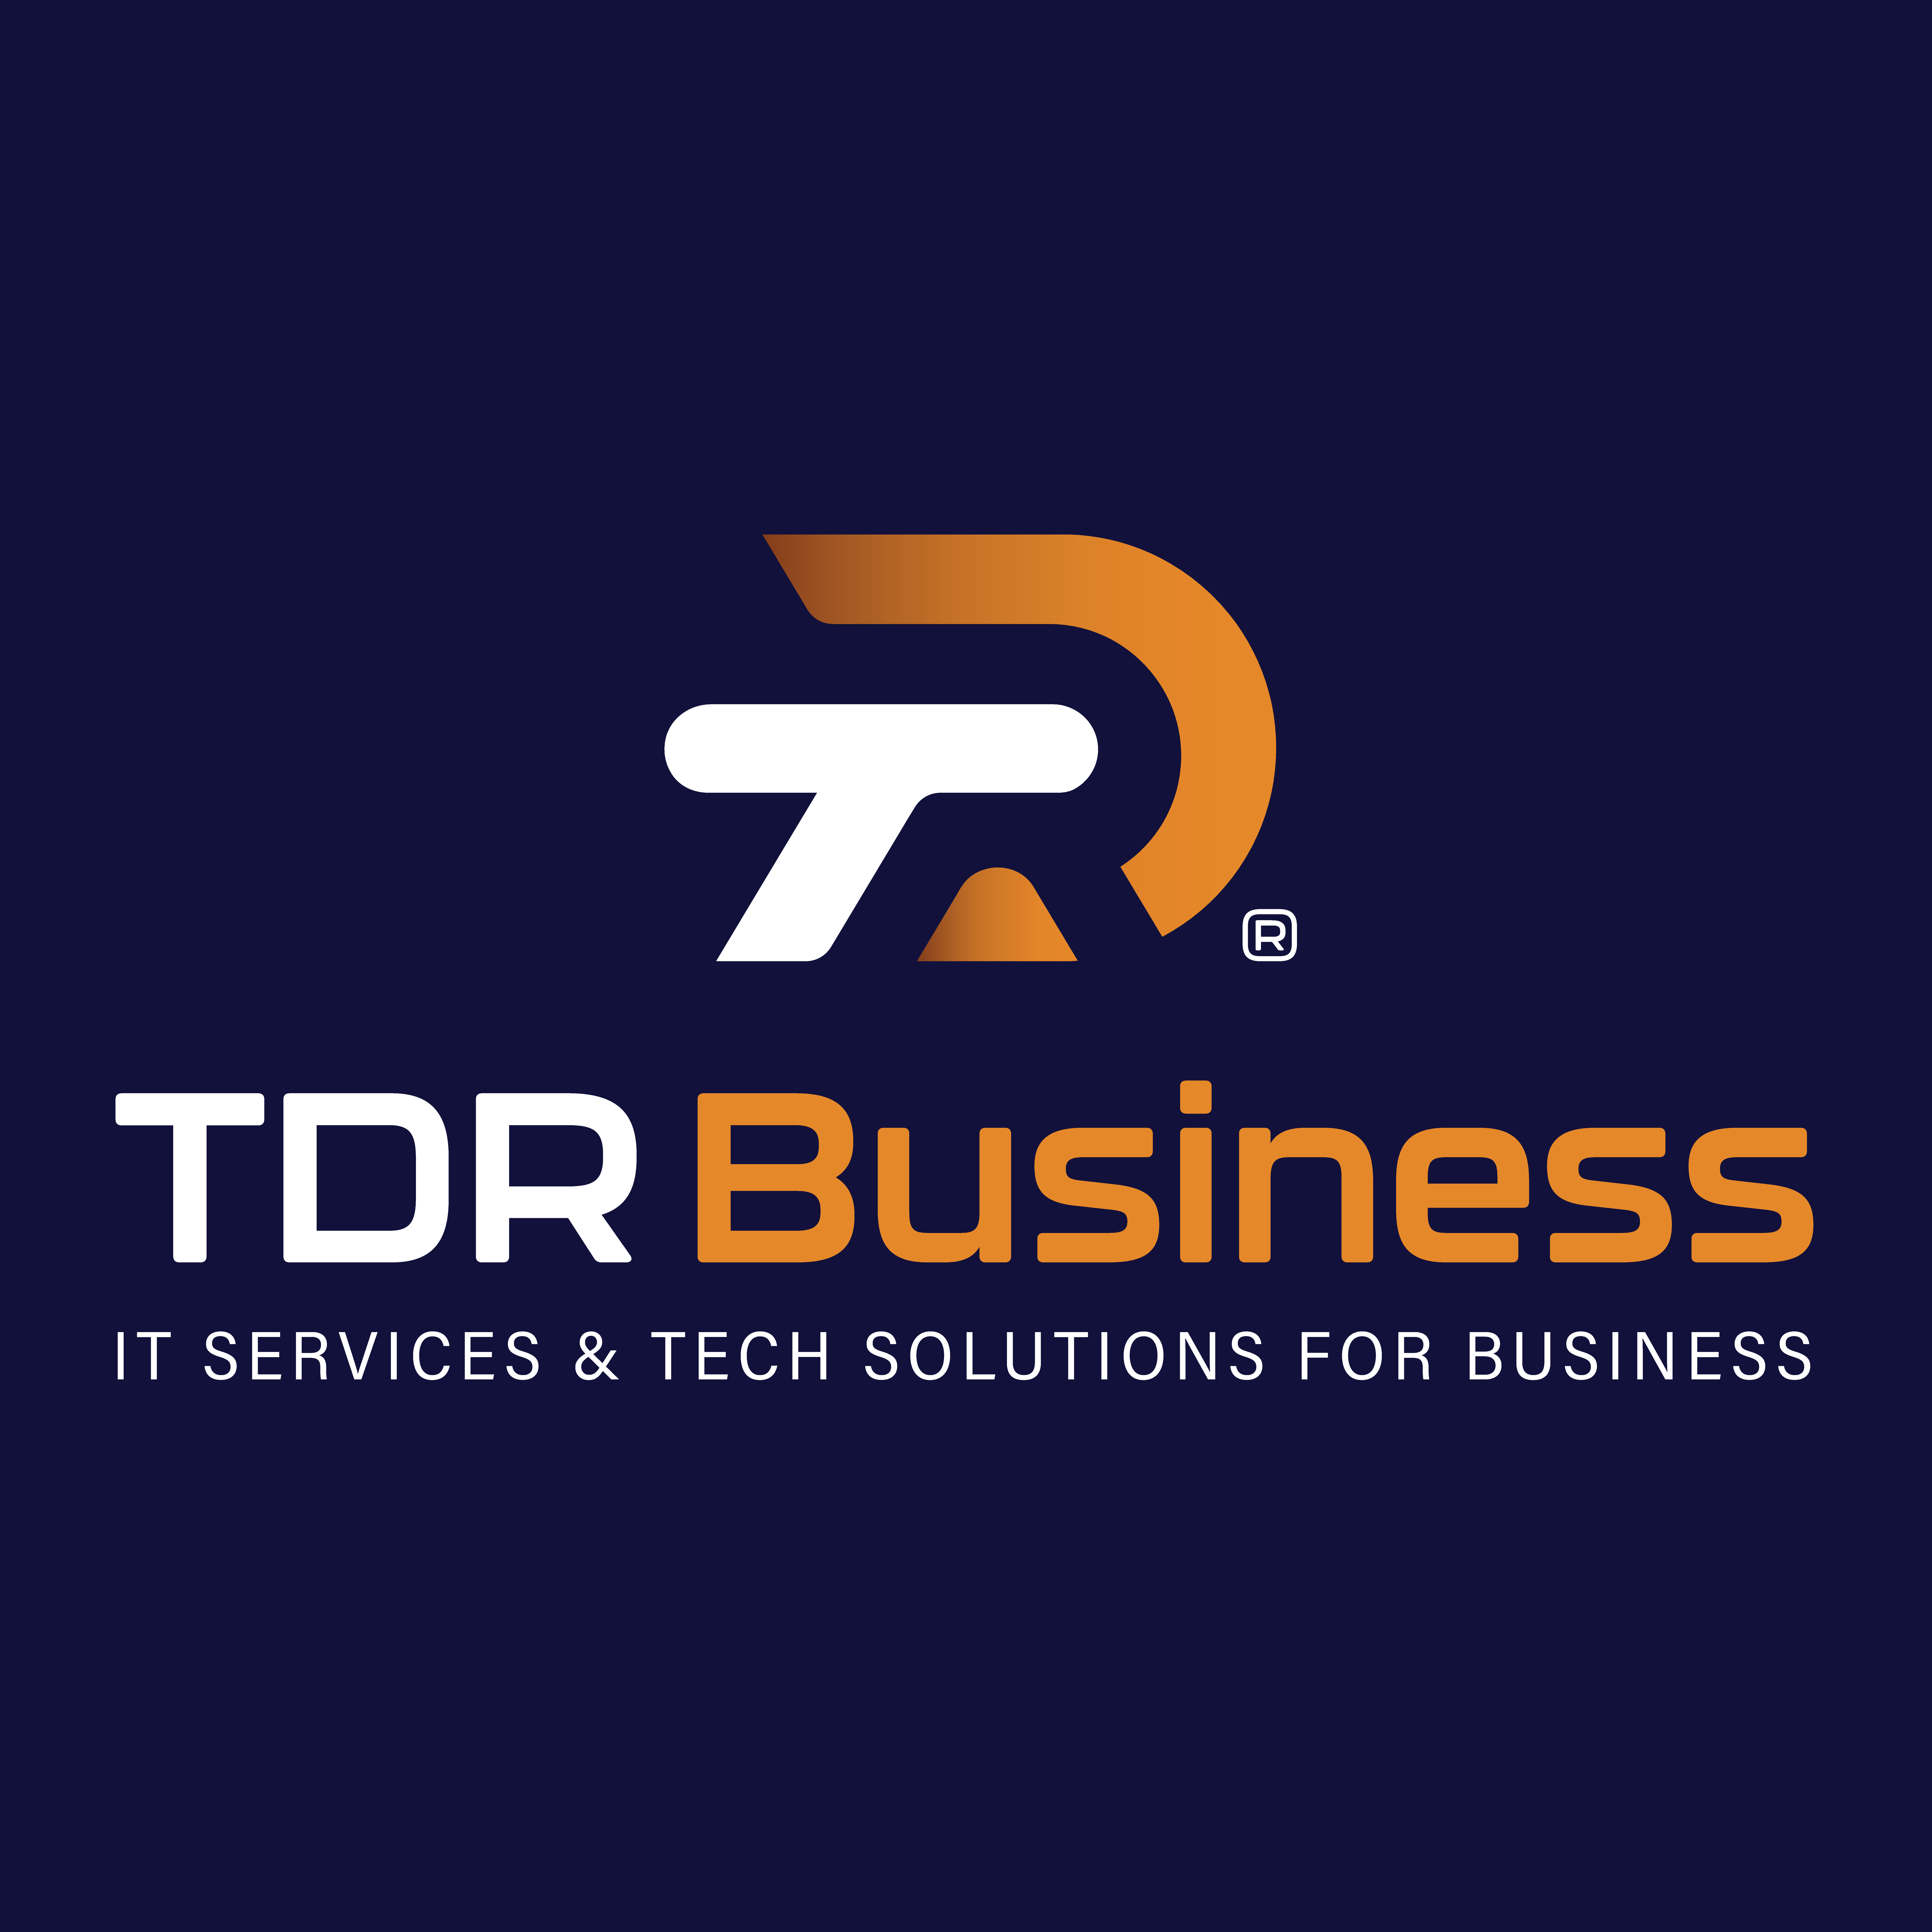 TDR Business